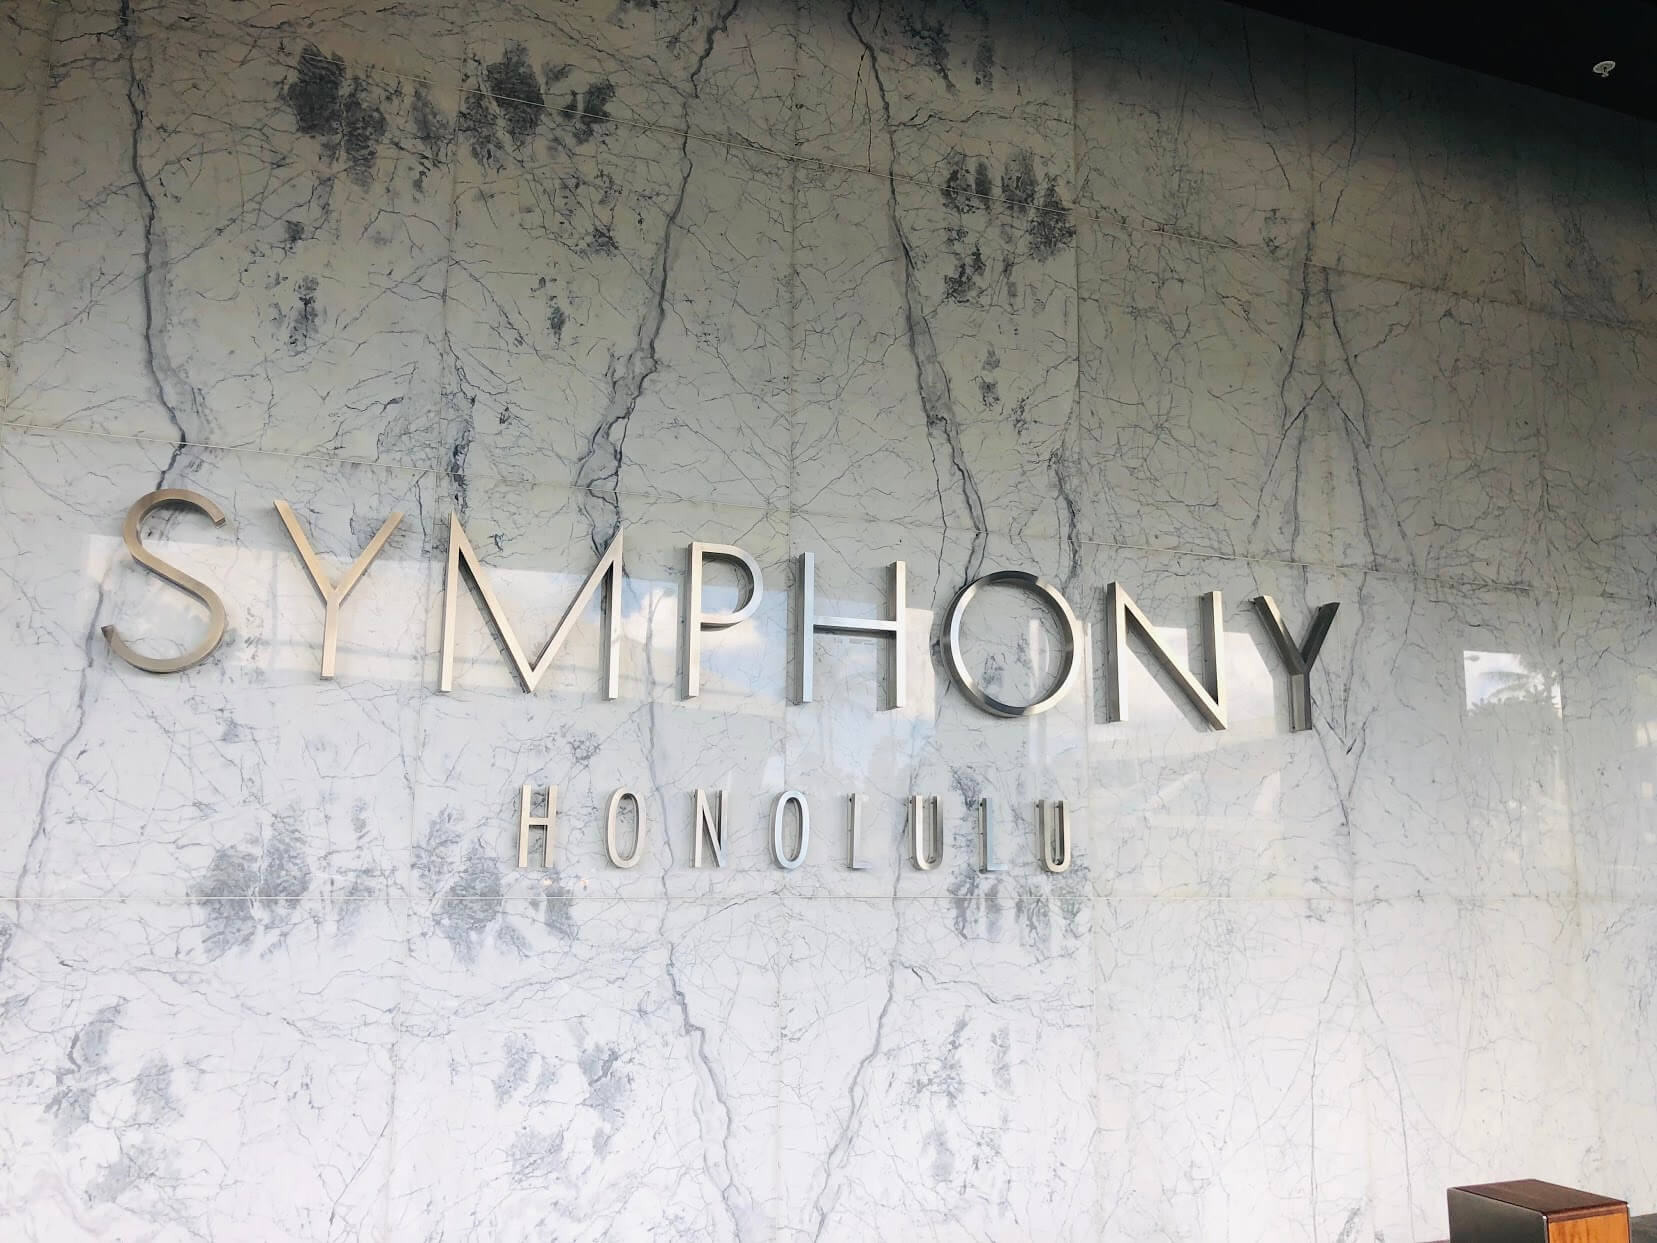 Symphony Honoluluの看板